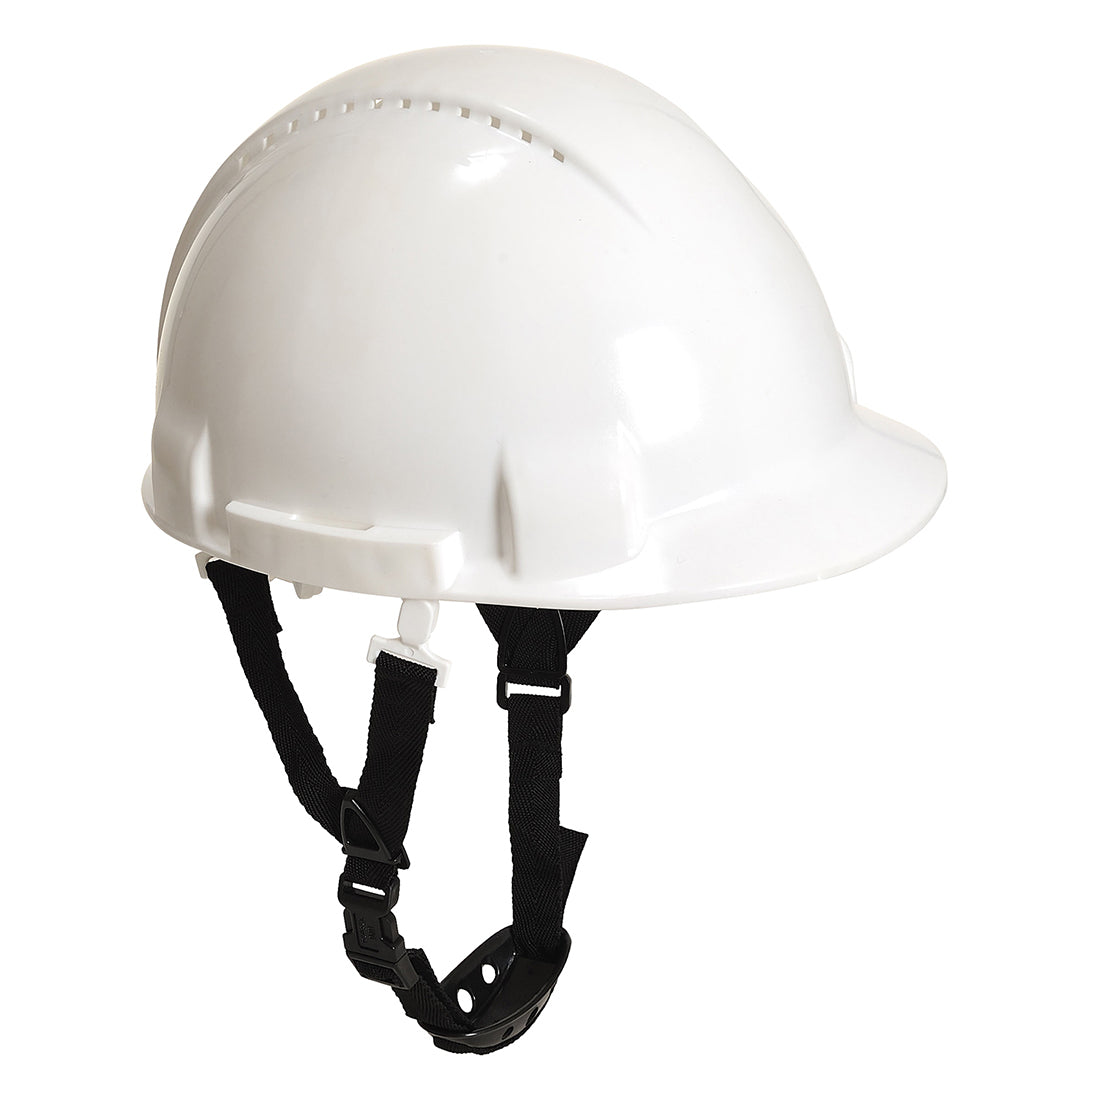 Monterosa Safety Helmet